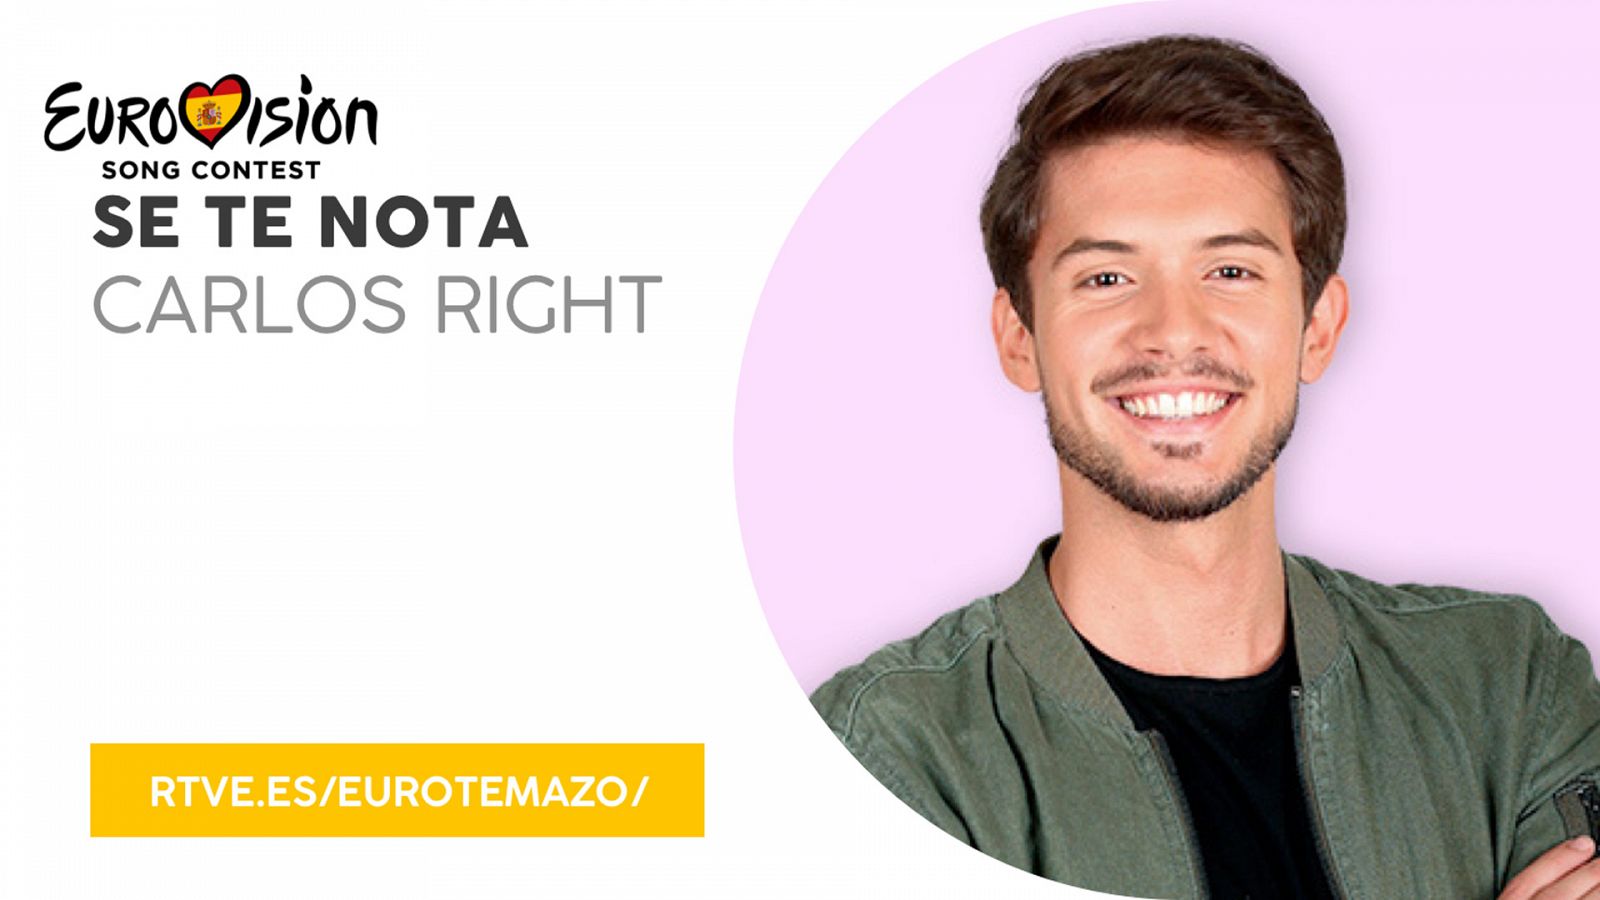 Eurovisión 2019 - Eurotemazo: versión final de "Se te nota", cantada por Carlos Right